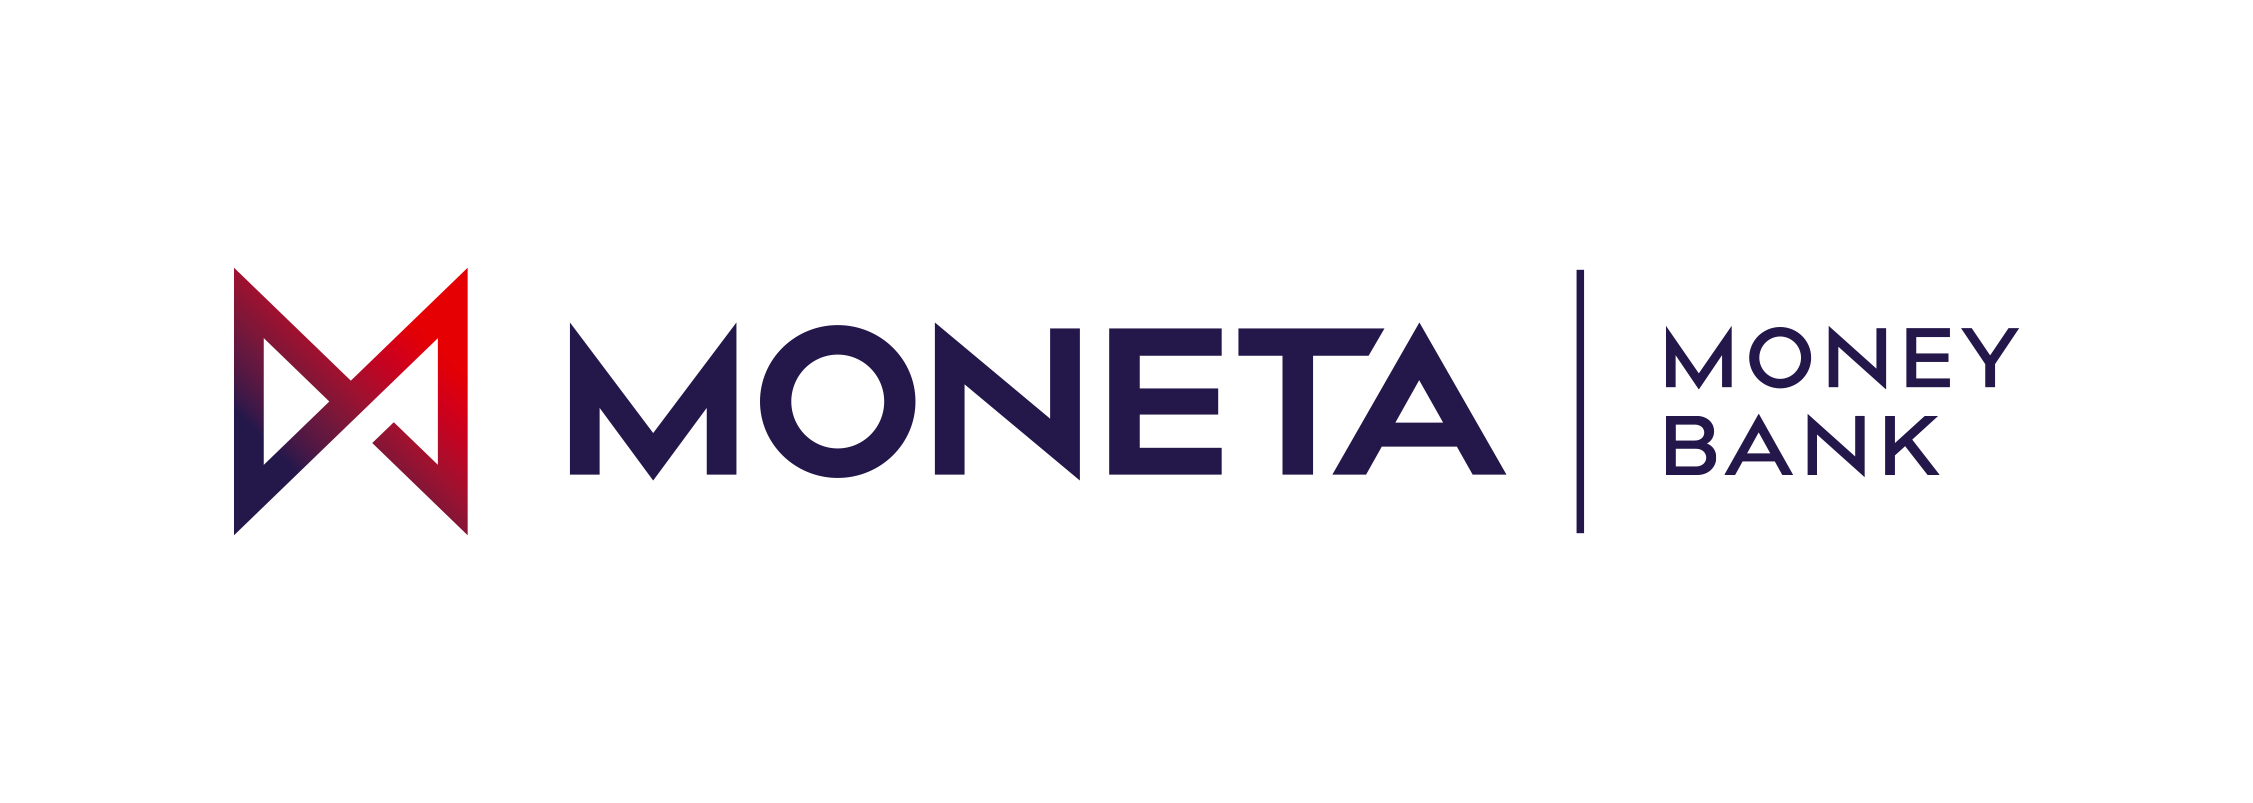 MONETA_MB-logo (jpg)